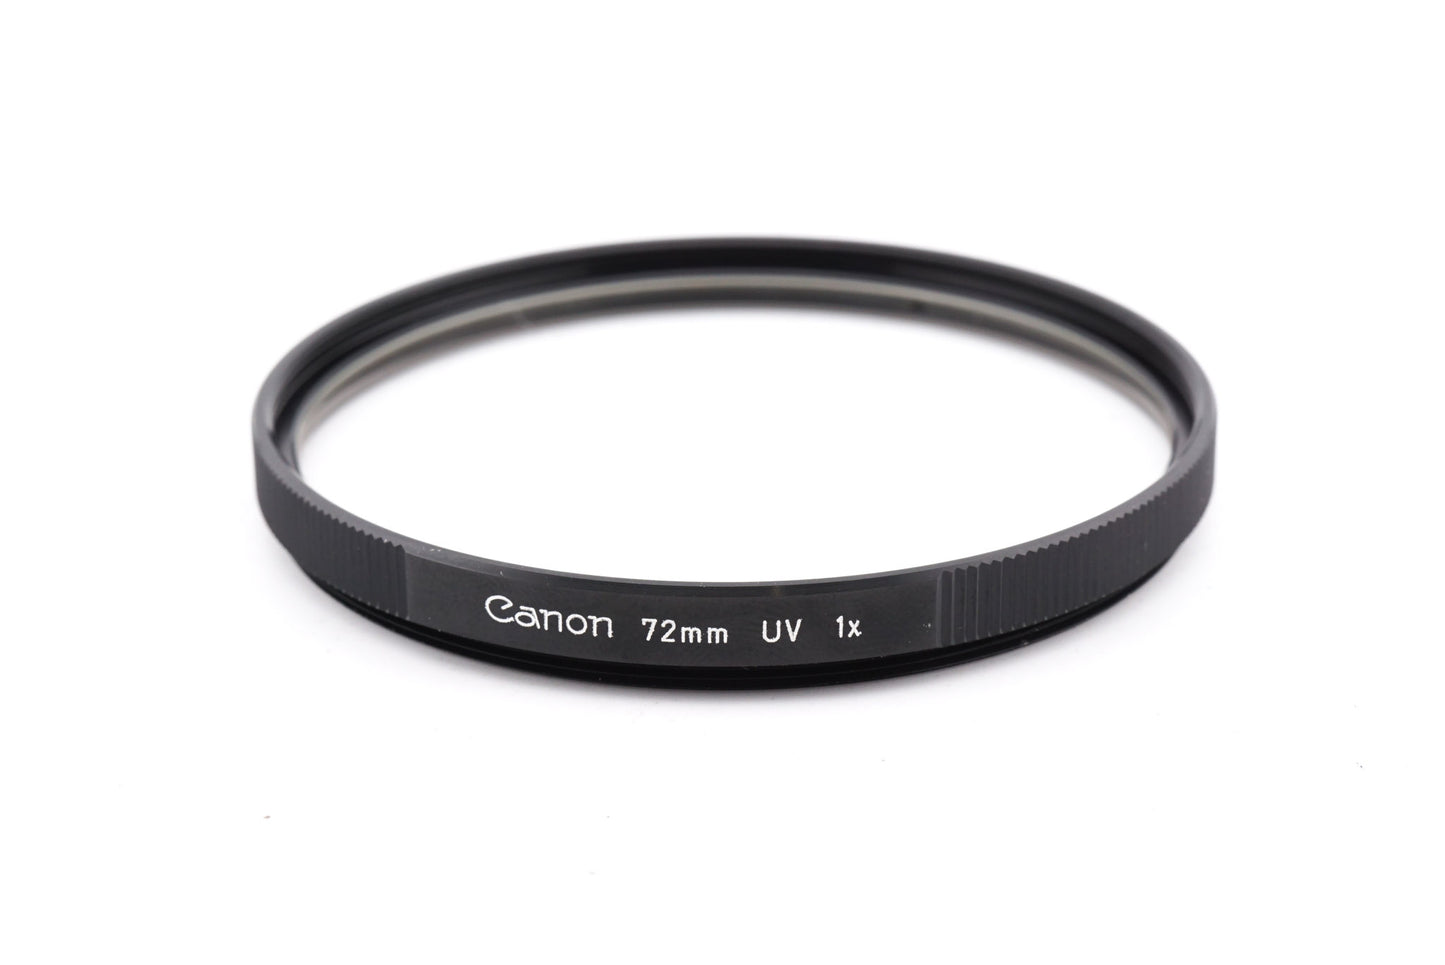 Canon 72mm UV Filter 1x - Accessory